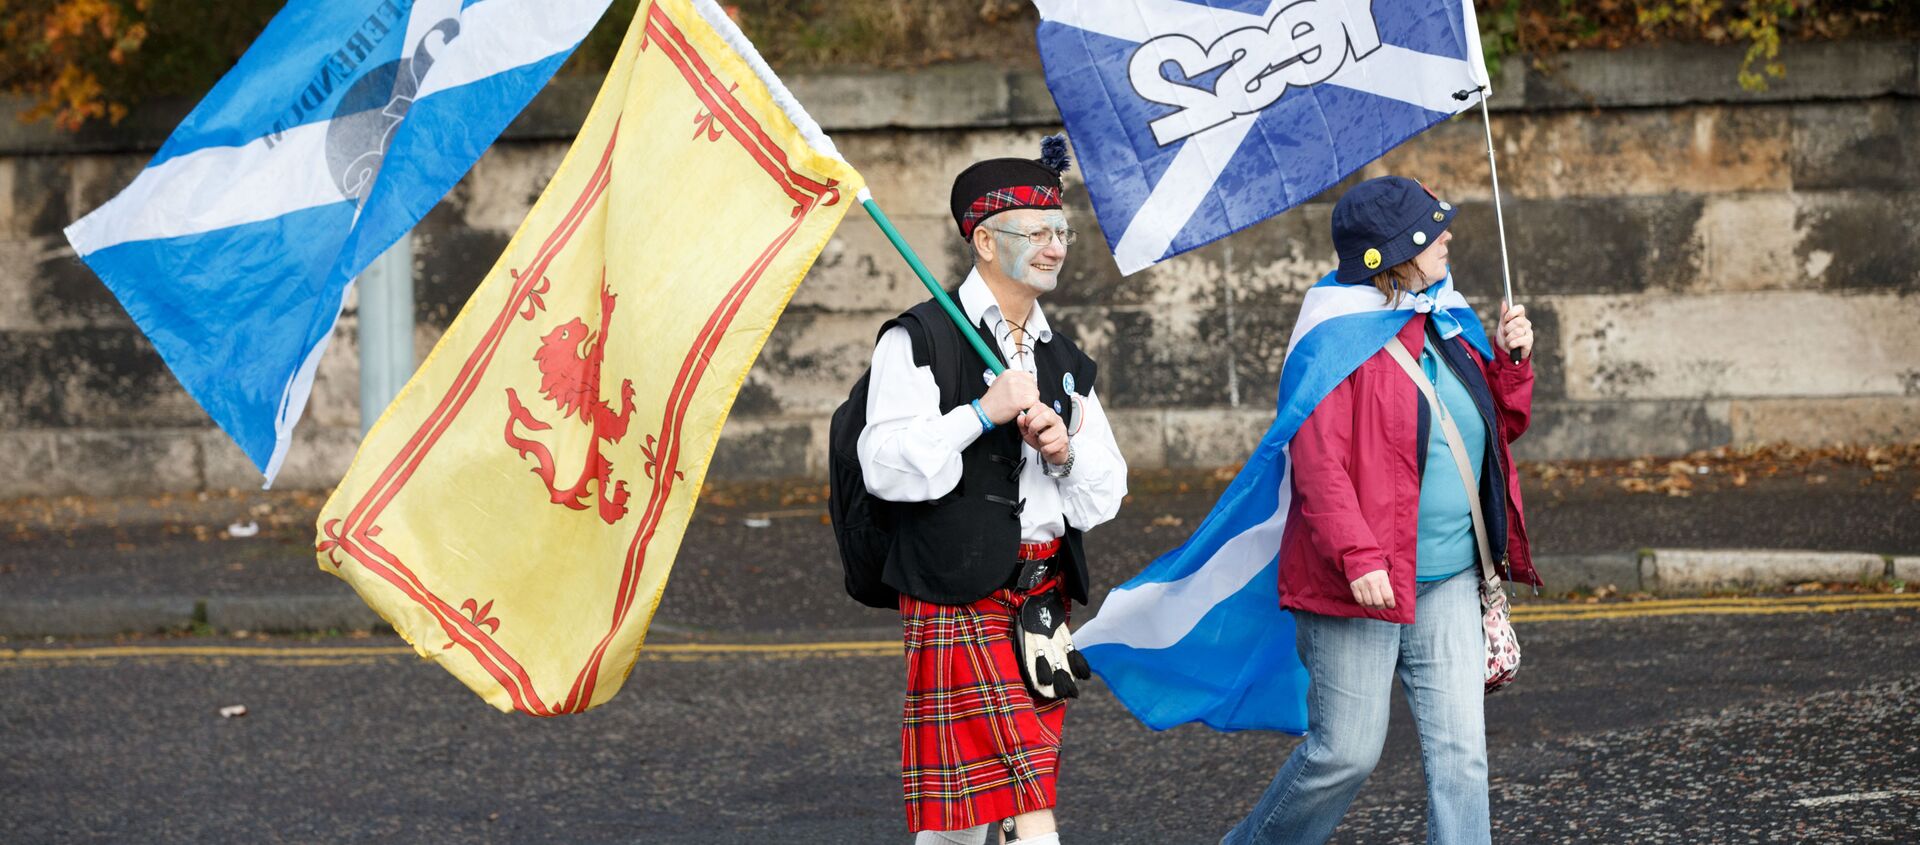 Марш за независимость Шотландии в Эдинбурге - Sputnik Узбекистан, 1920, 15.09.2020